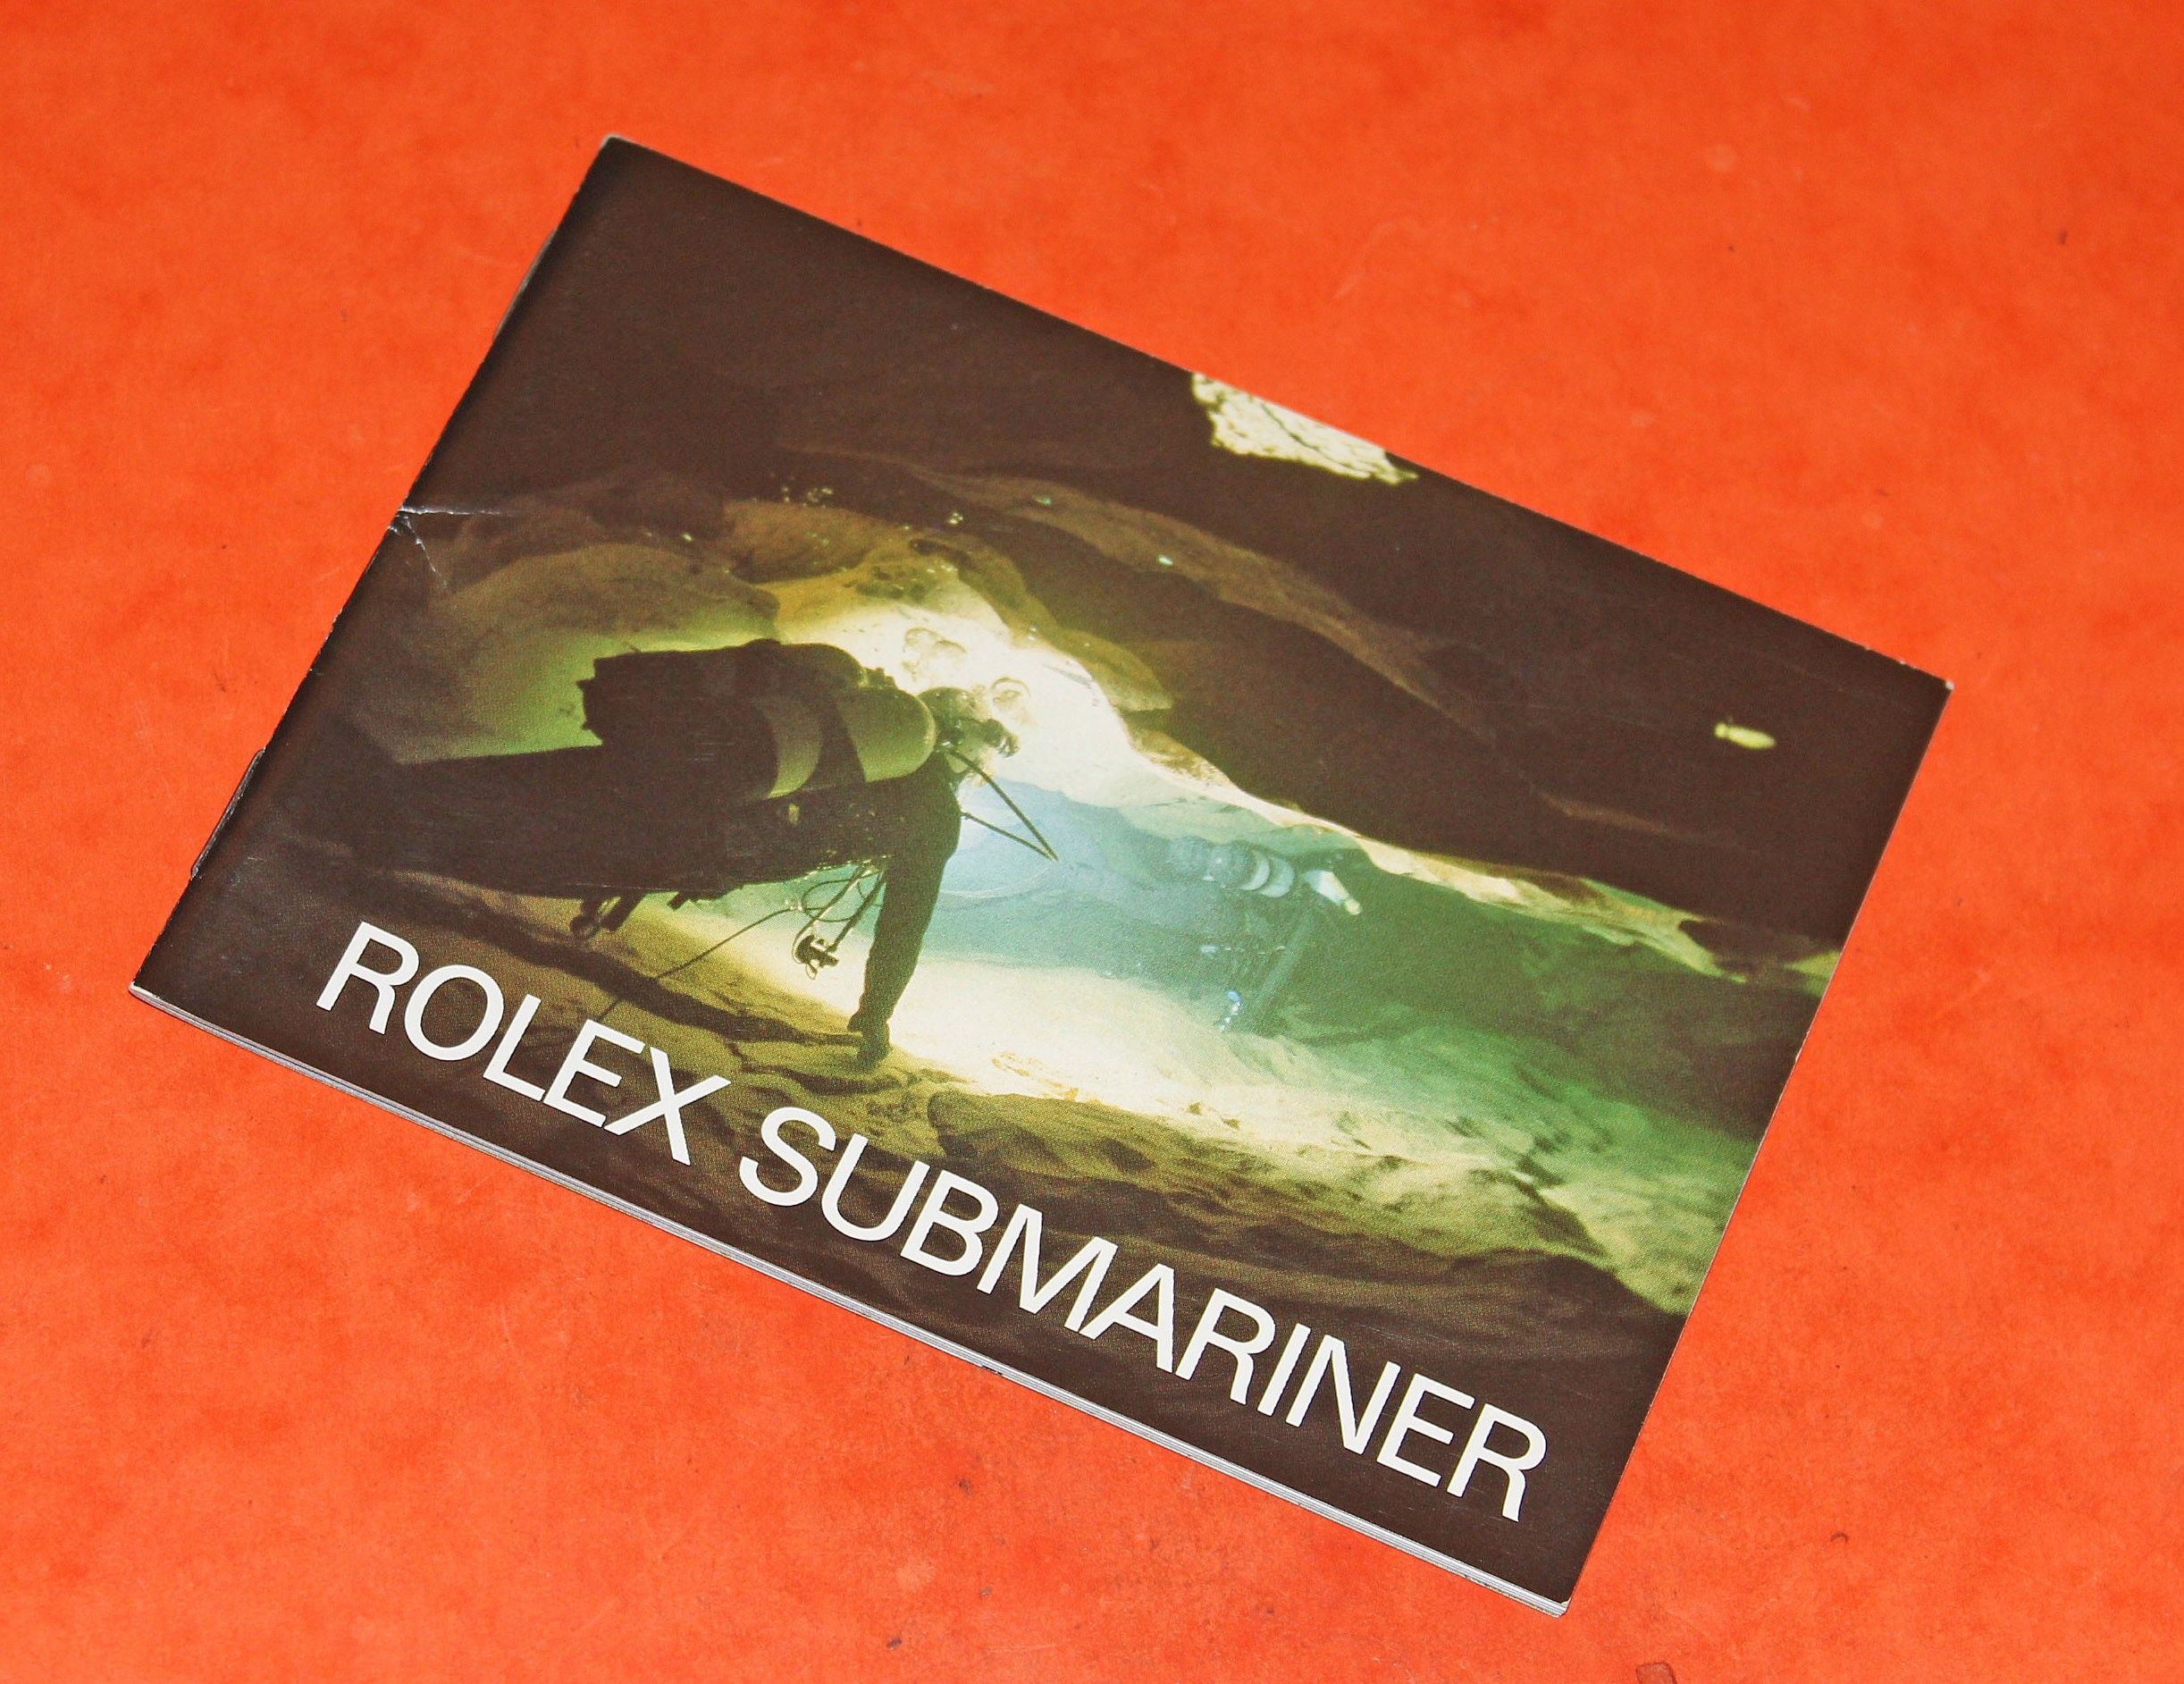 rolex submariner booklet